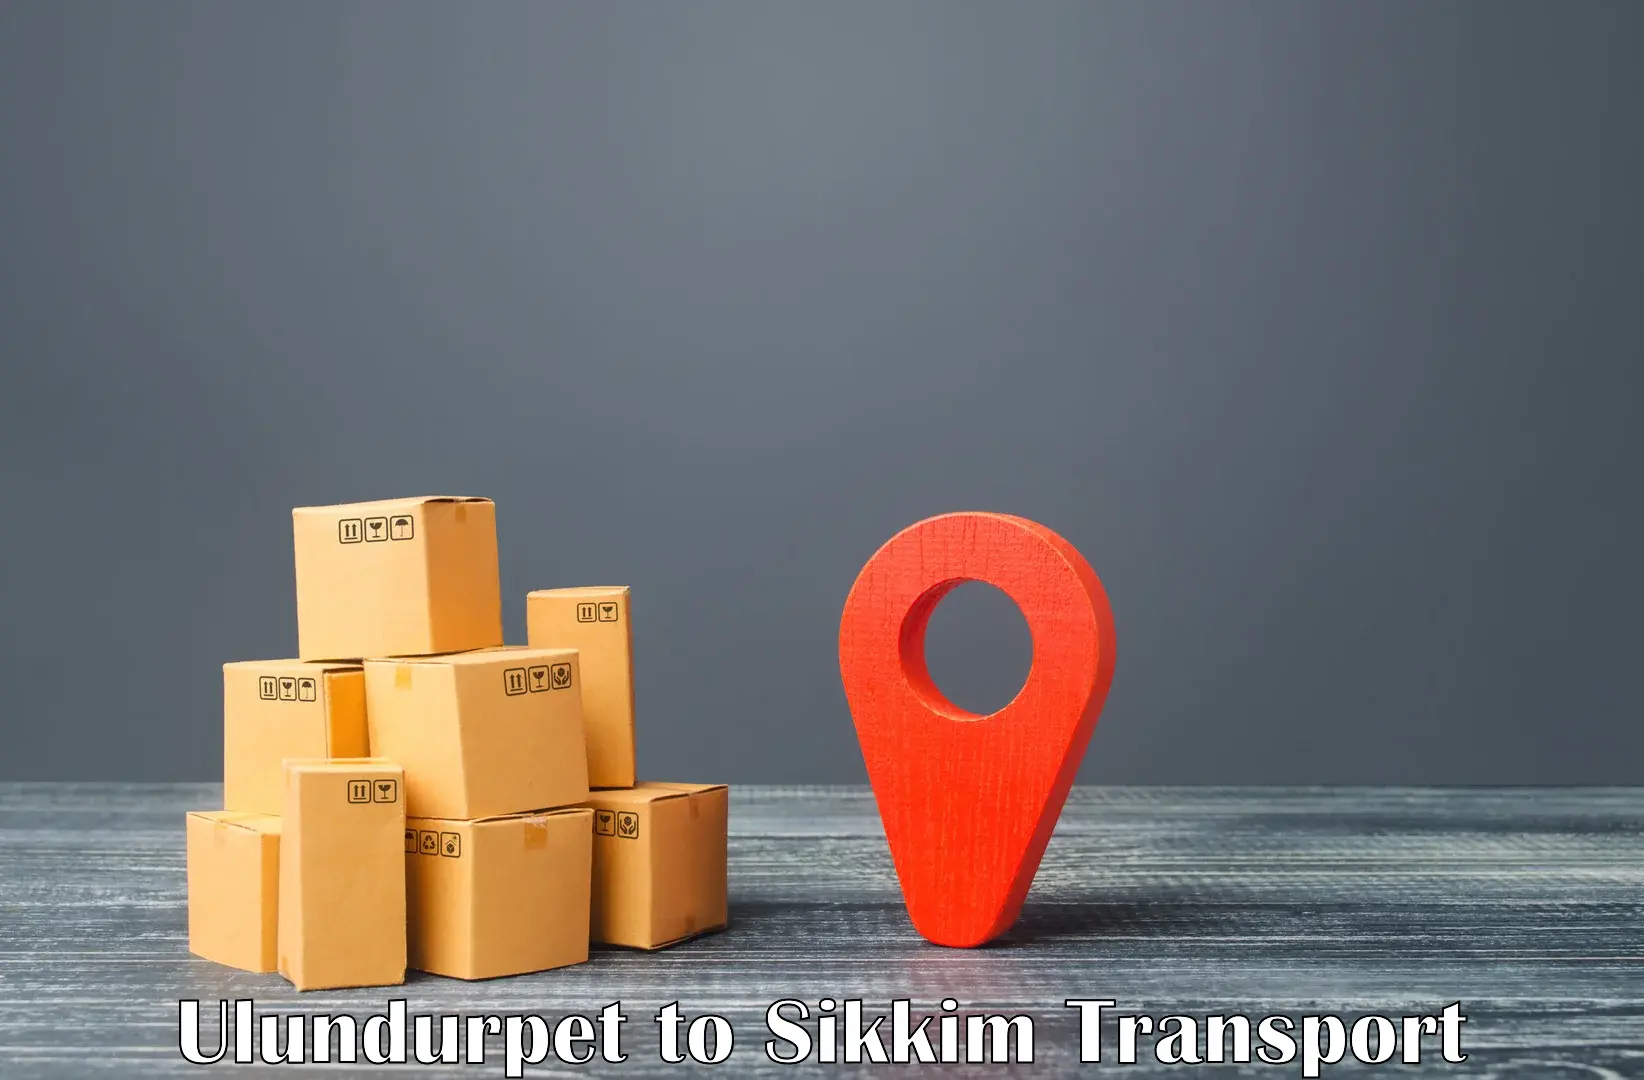 Online transport service Ulundurpet to West Sikkim